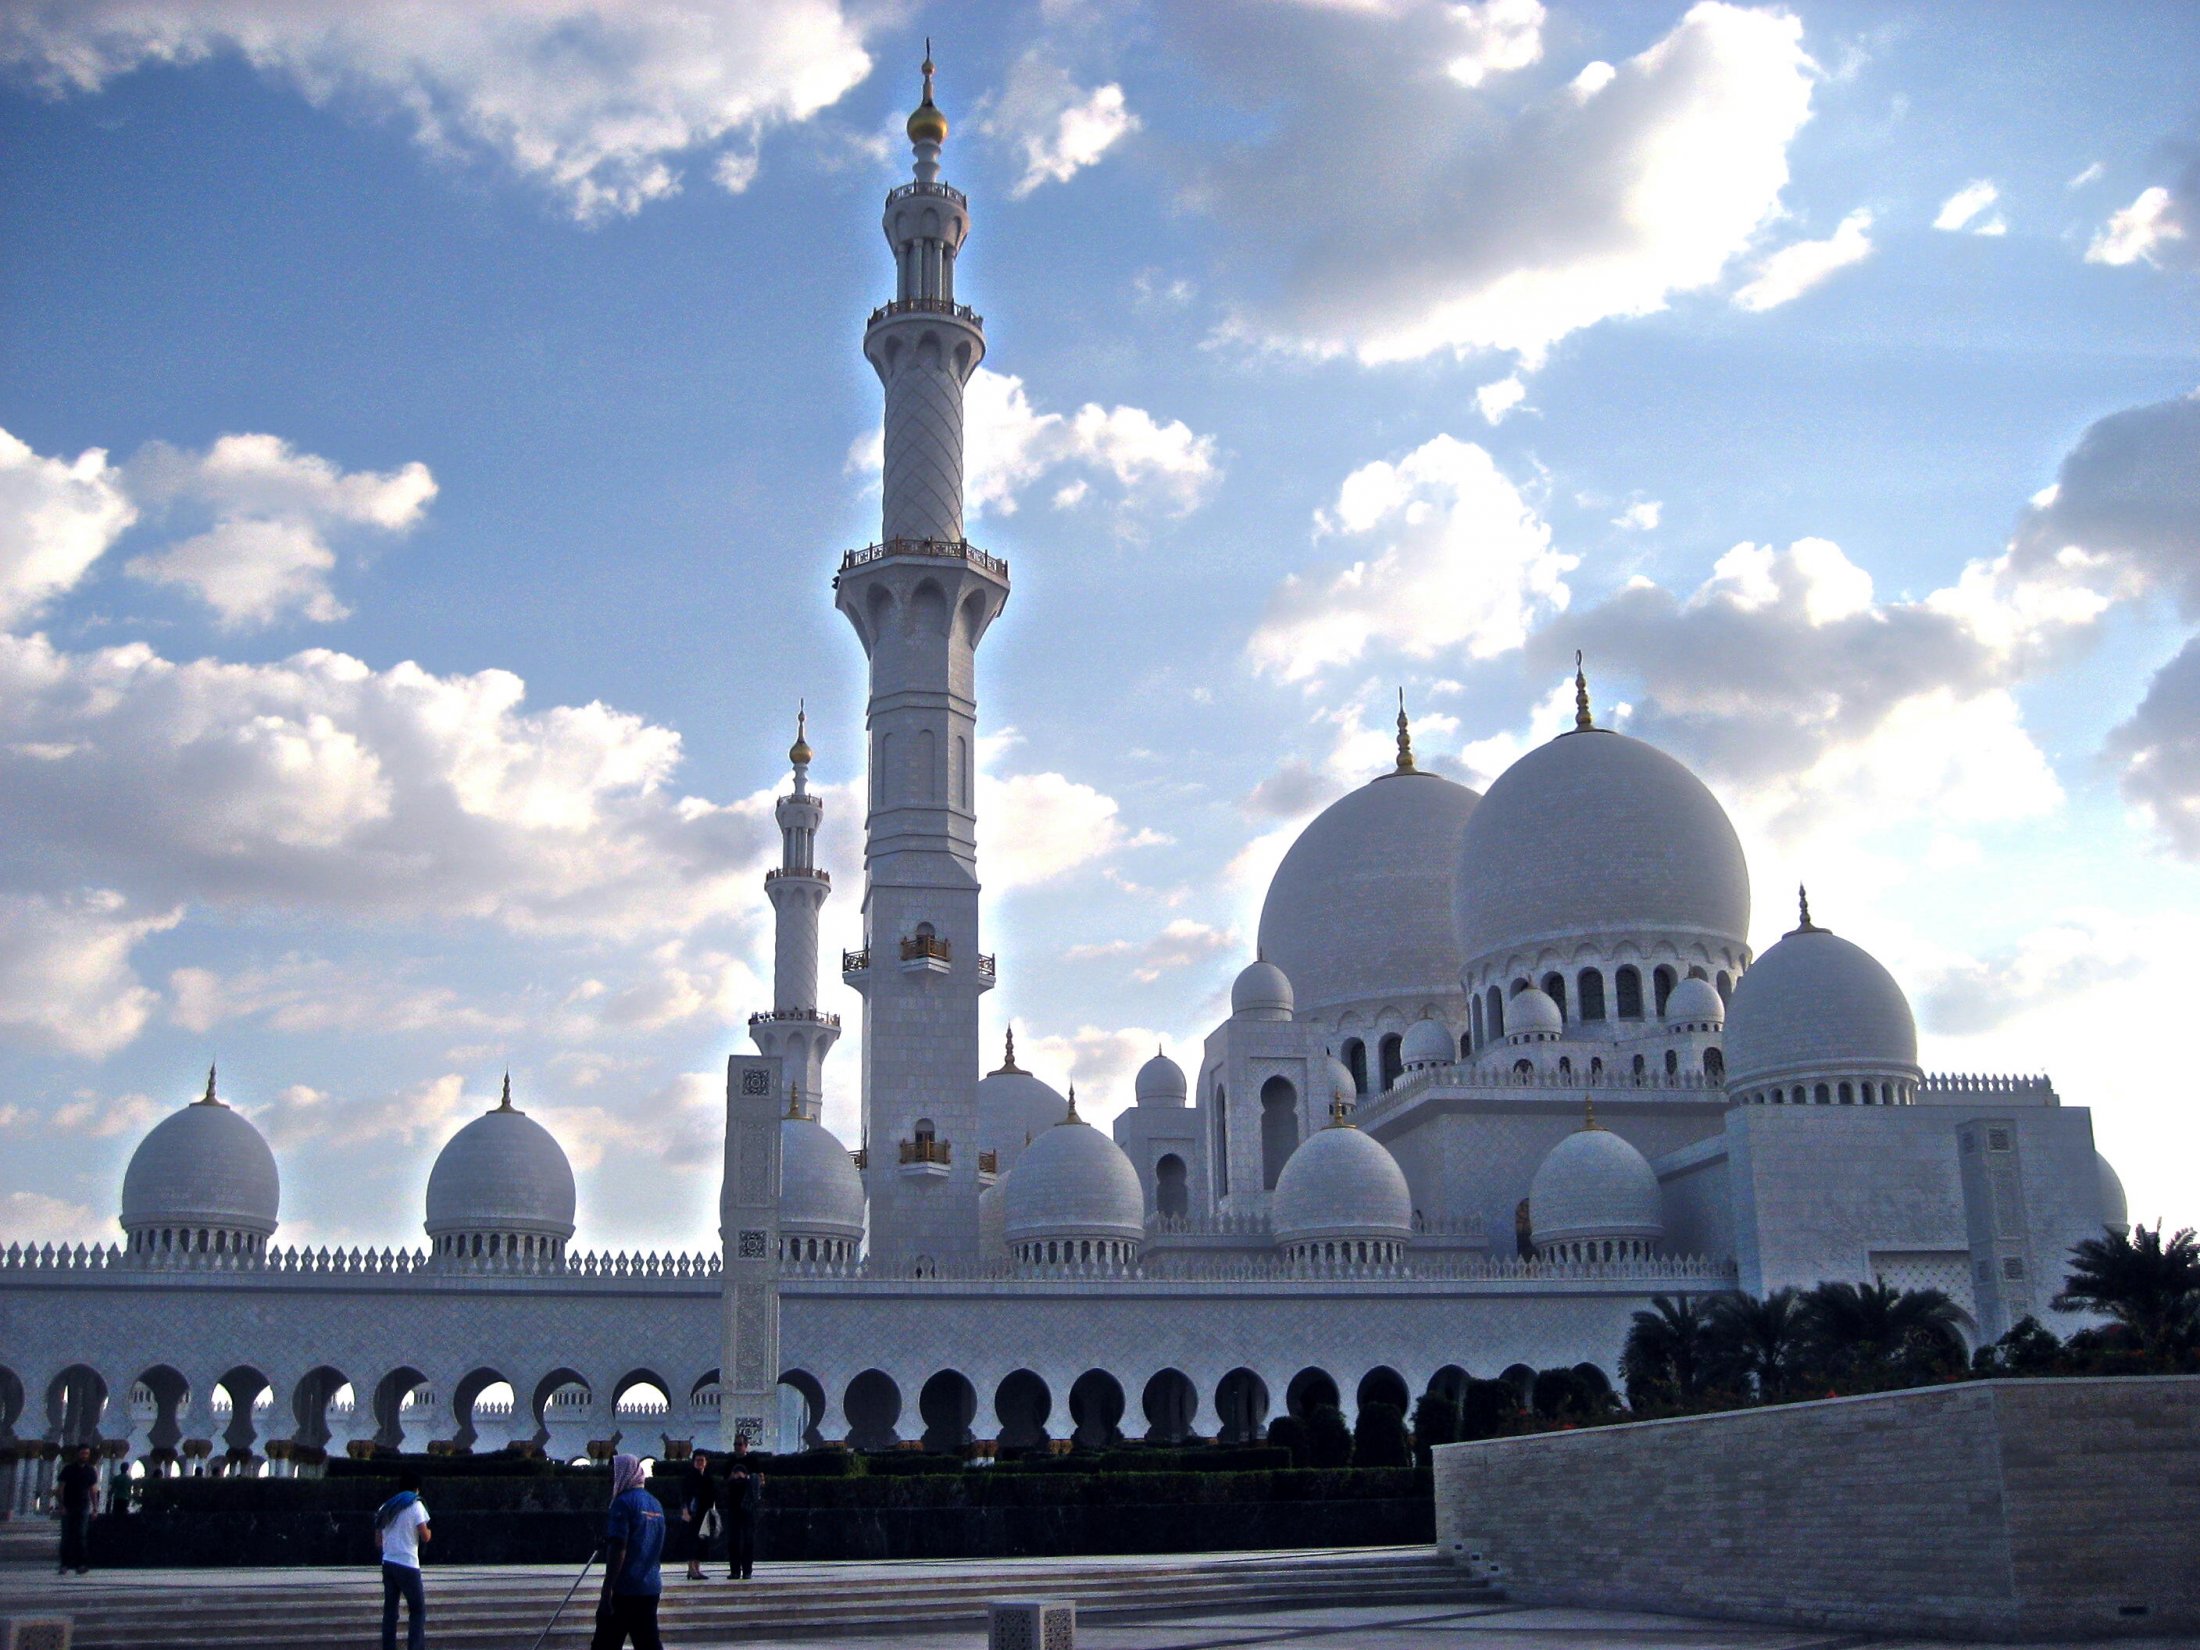 Anfahrt zur Sheikh Zayed Mosque